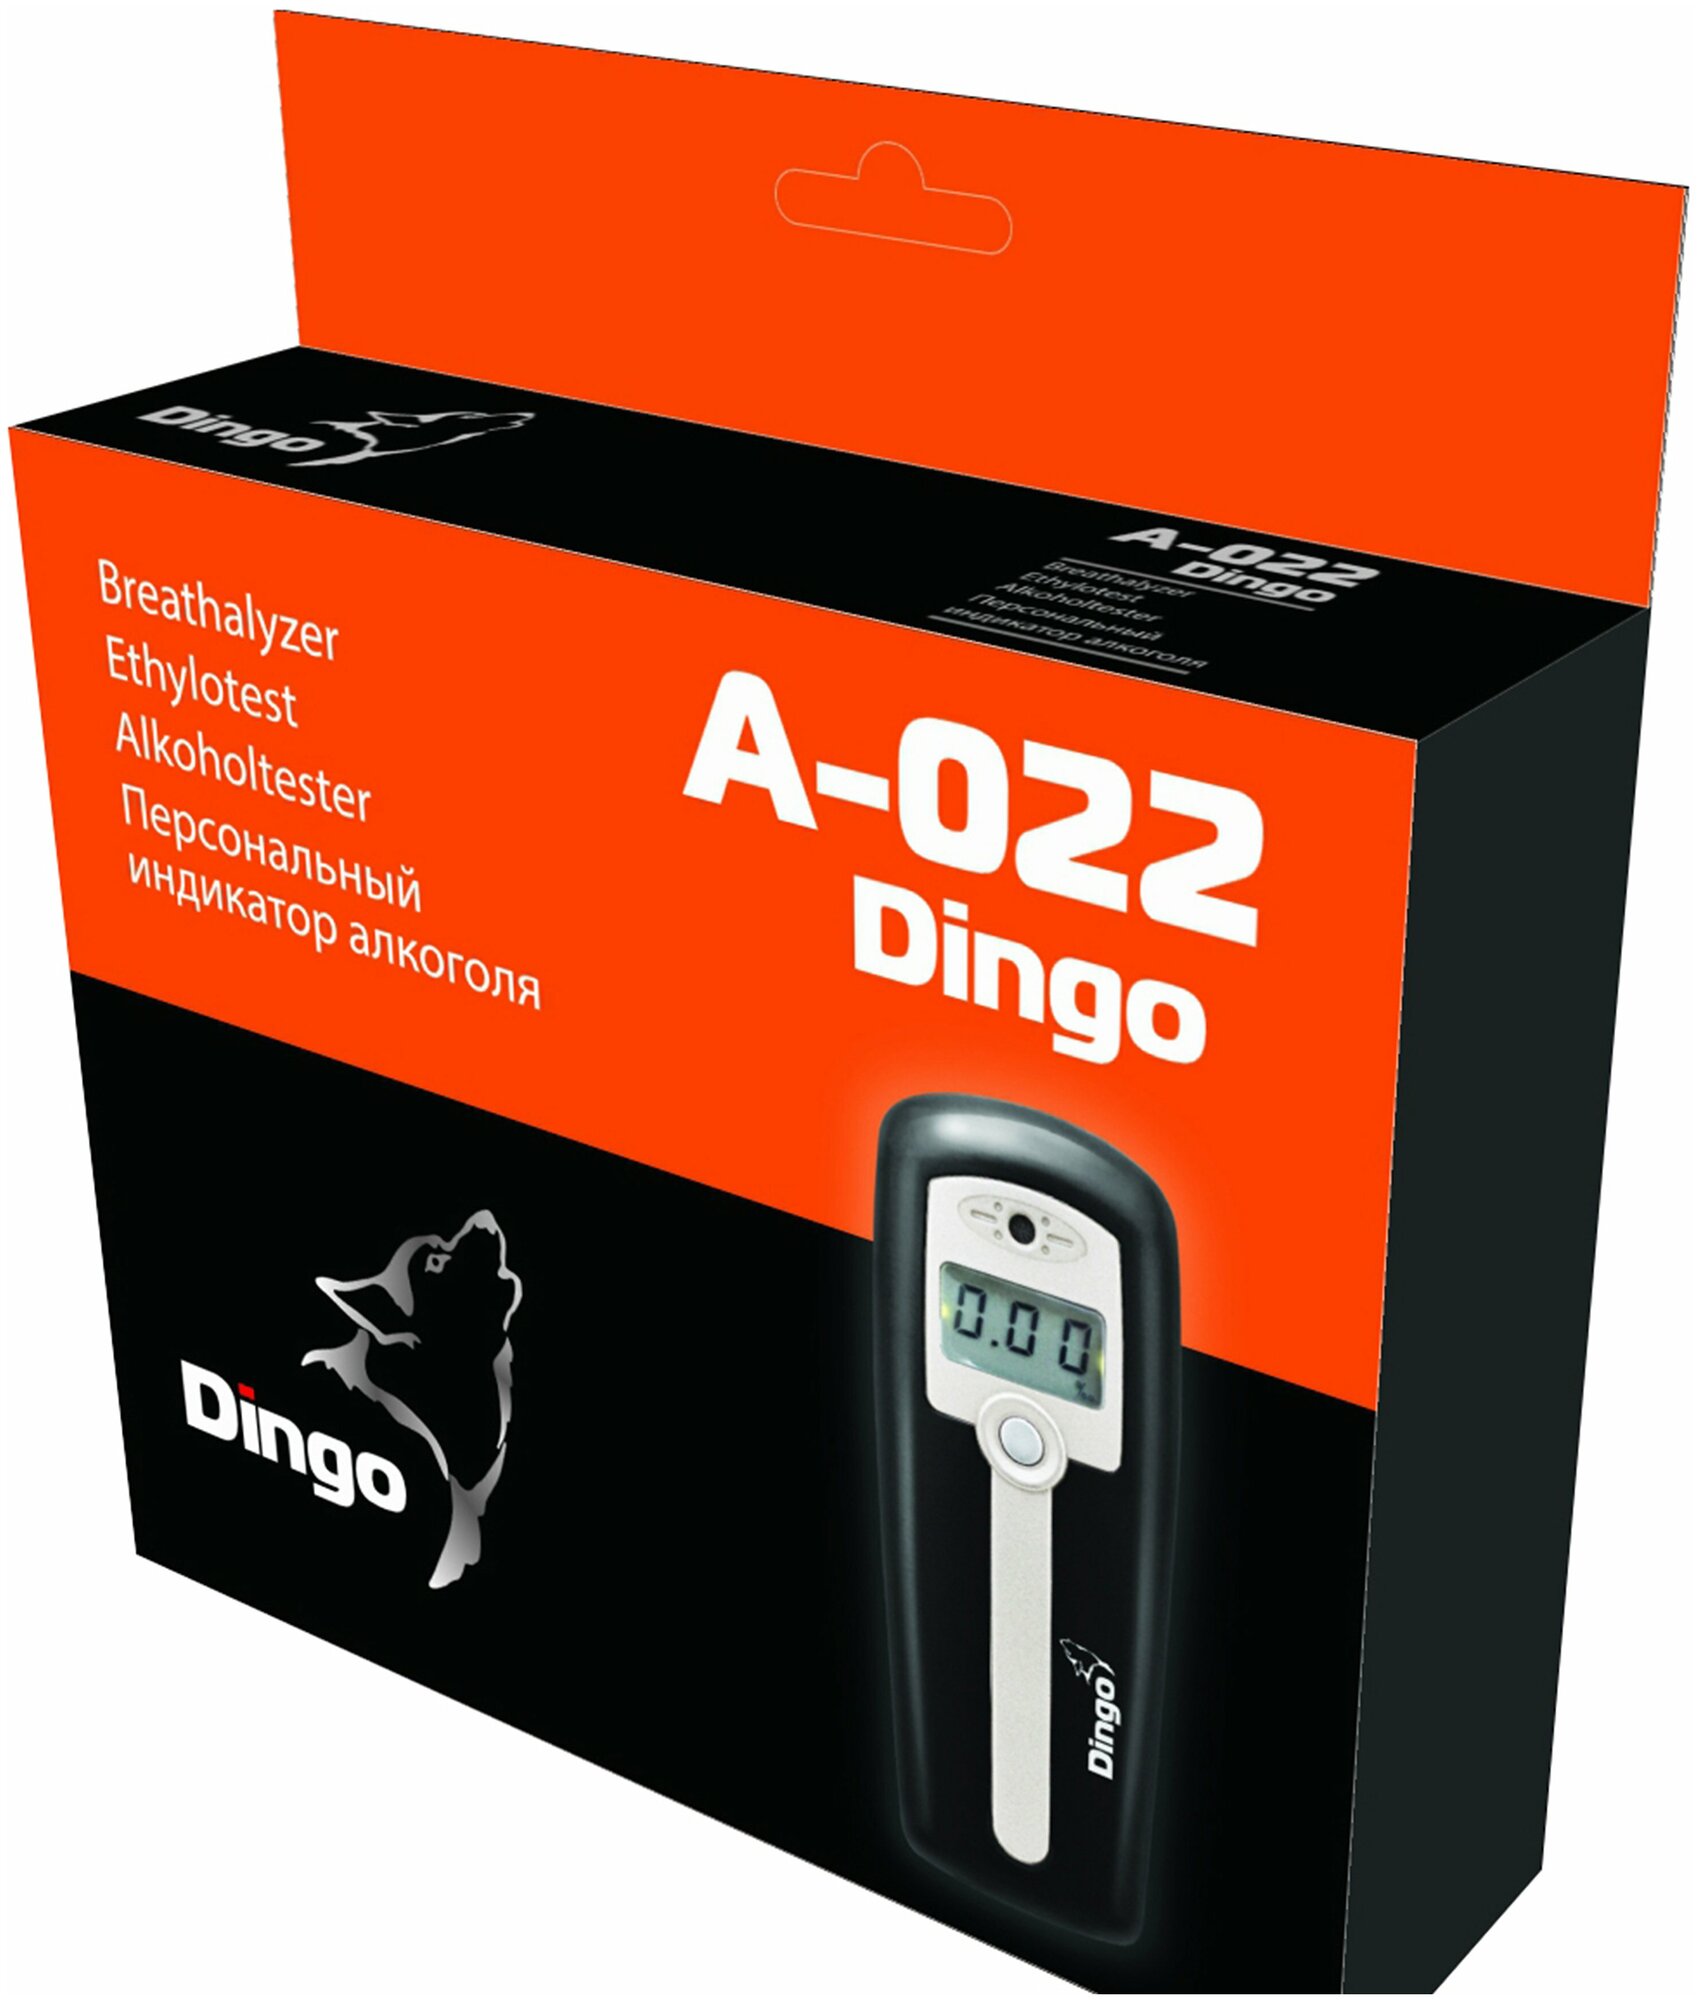 Алкотестер Динго A-022